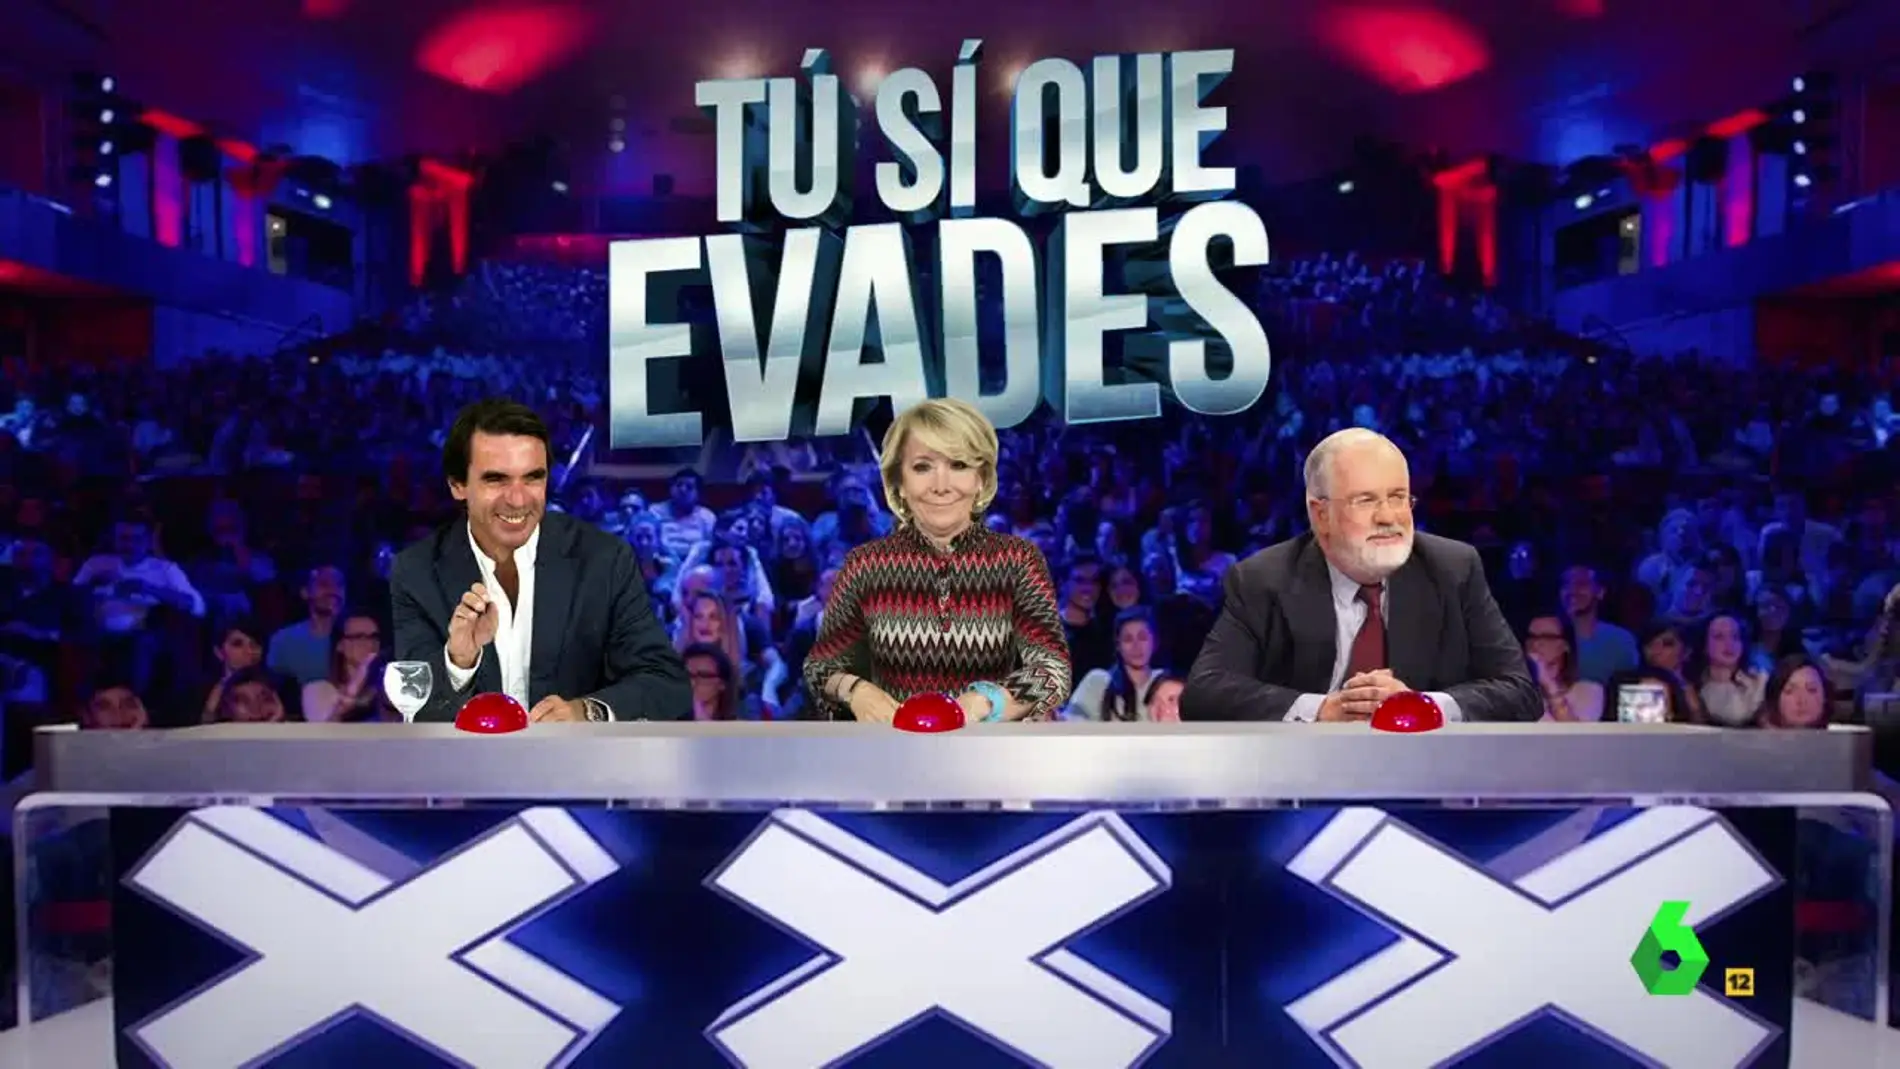 Cañete, Aznar y Aguirre, jurado de ‘Tú sí que evades’